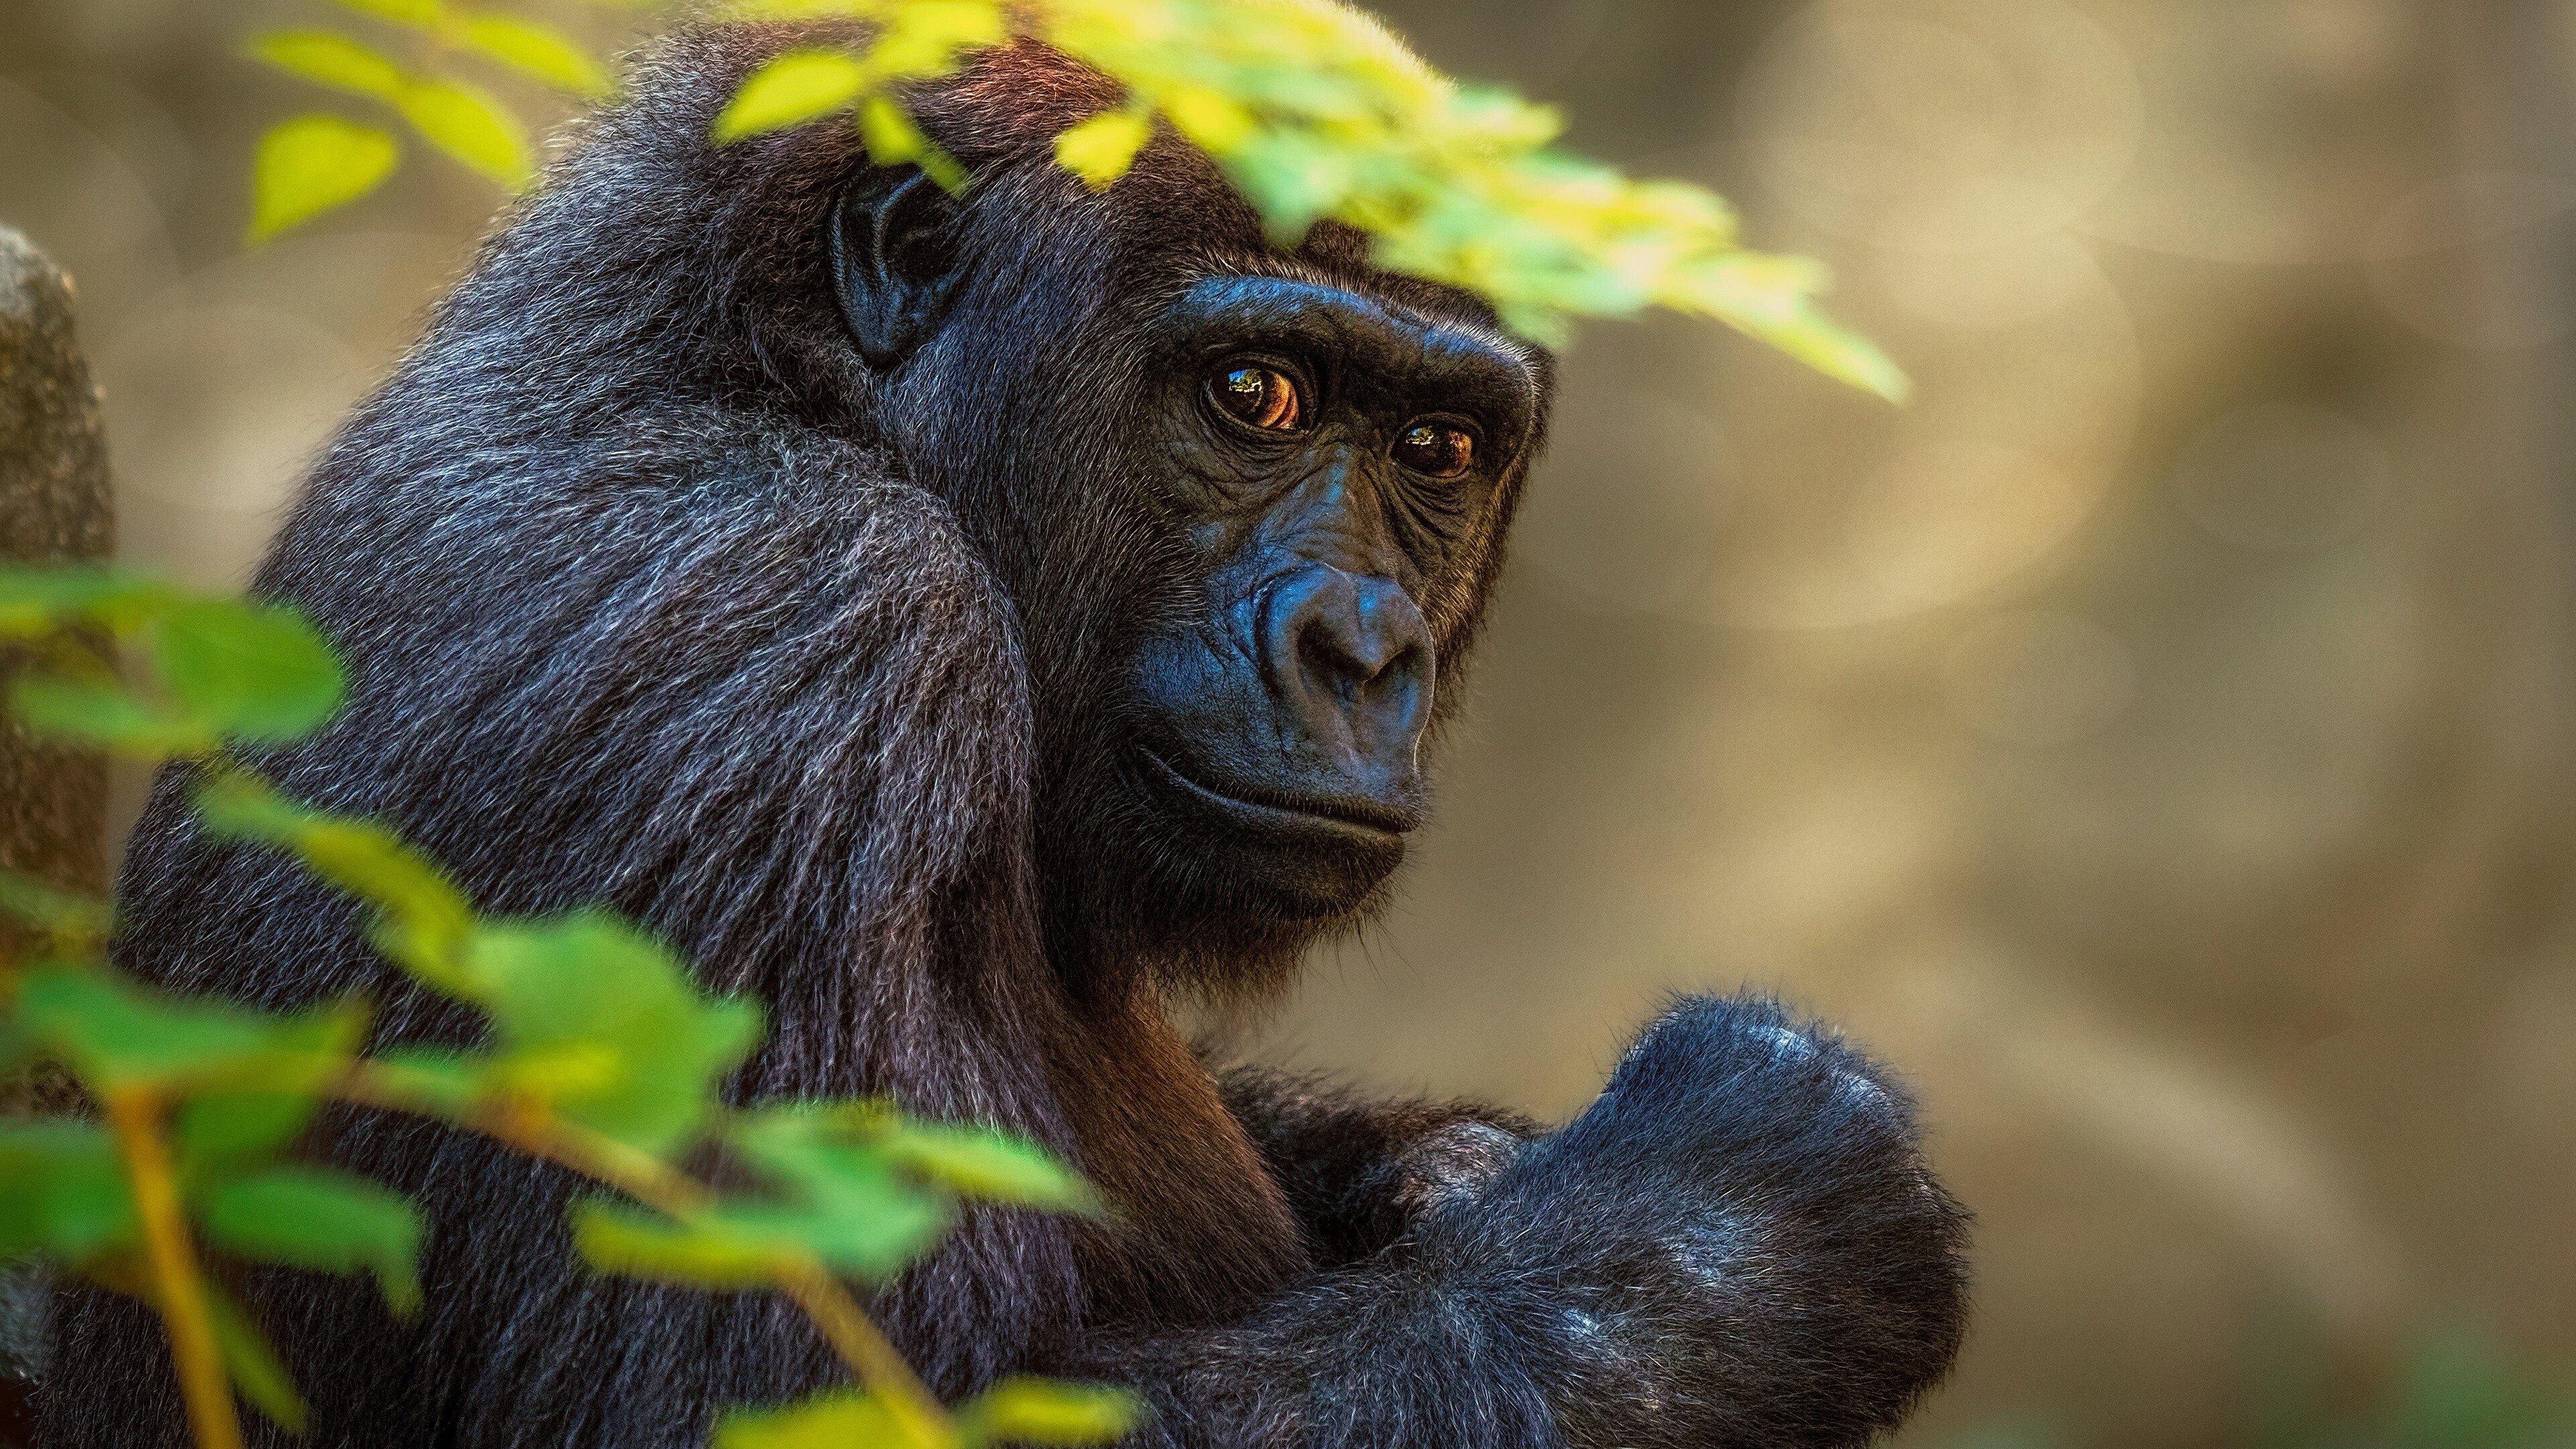 Ape: Gorilla, Terrestrial animal, Primate. 3840x2160 4K Wallpaper.